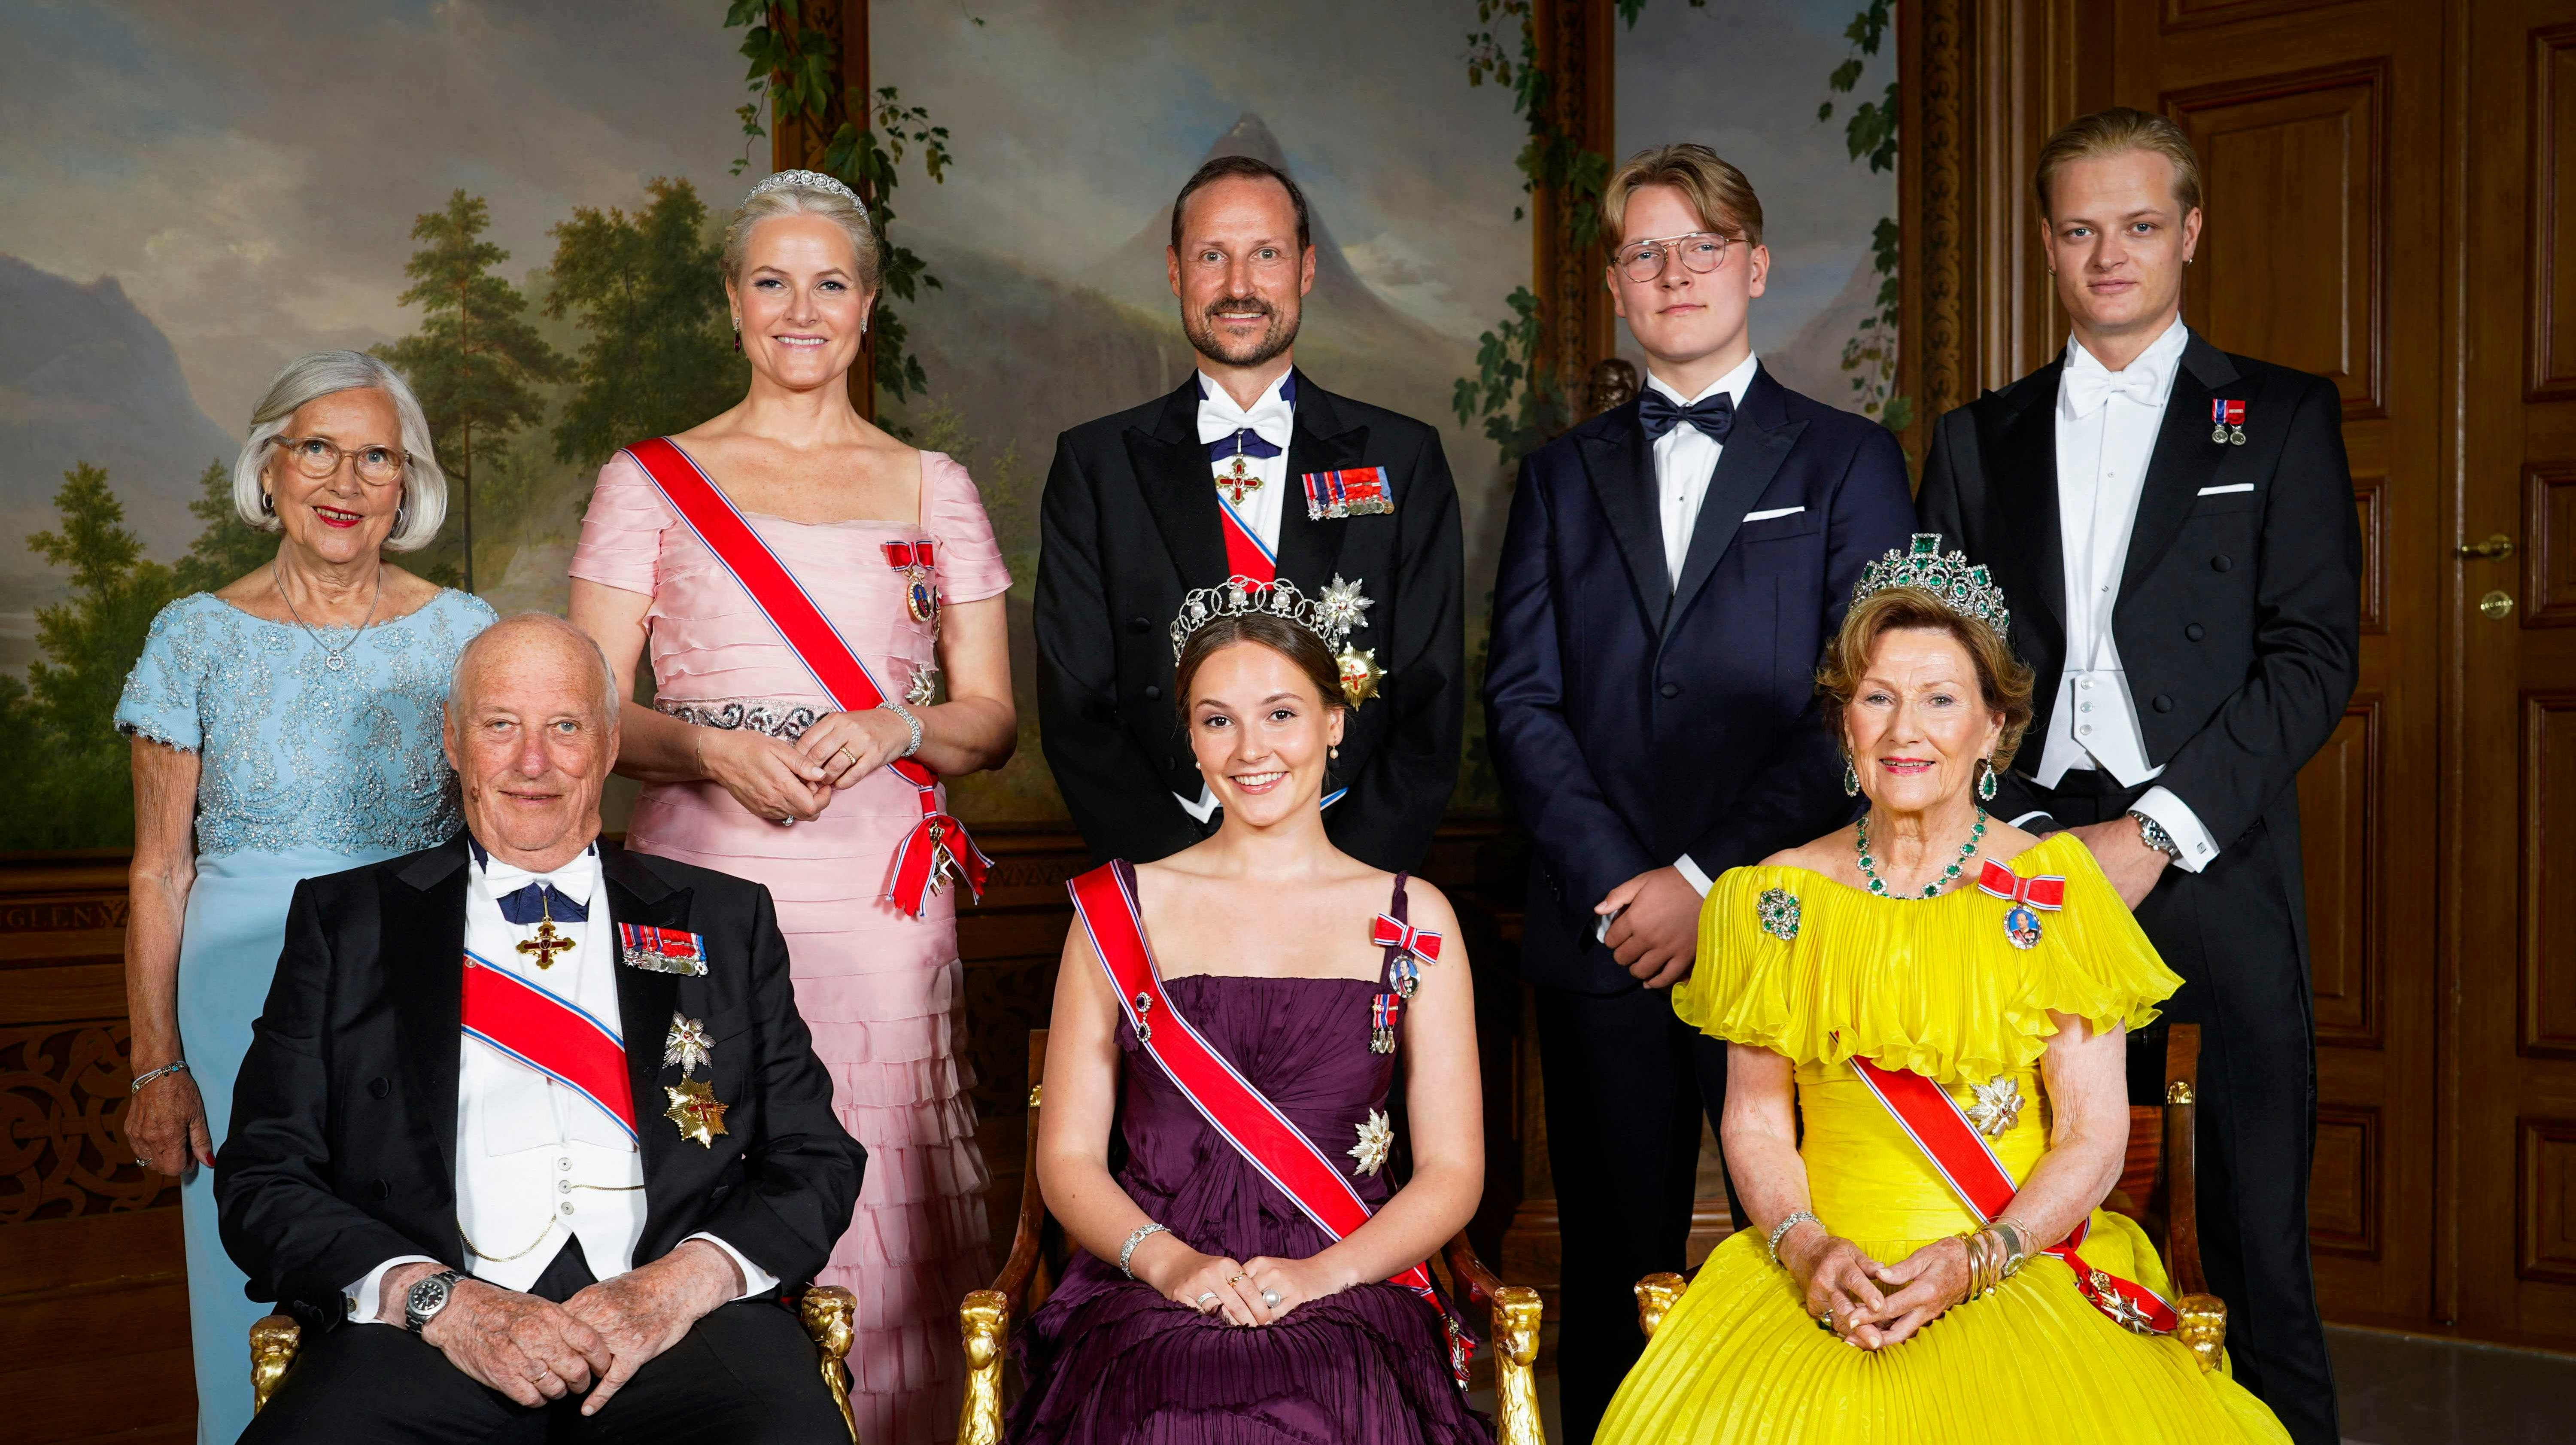 Det er Marius Borg Høiby oppe i øverste højre hjørne. Her står han med resten af den norske kongefamilie. nbsp;